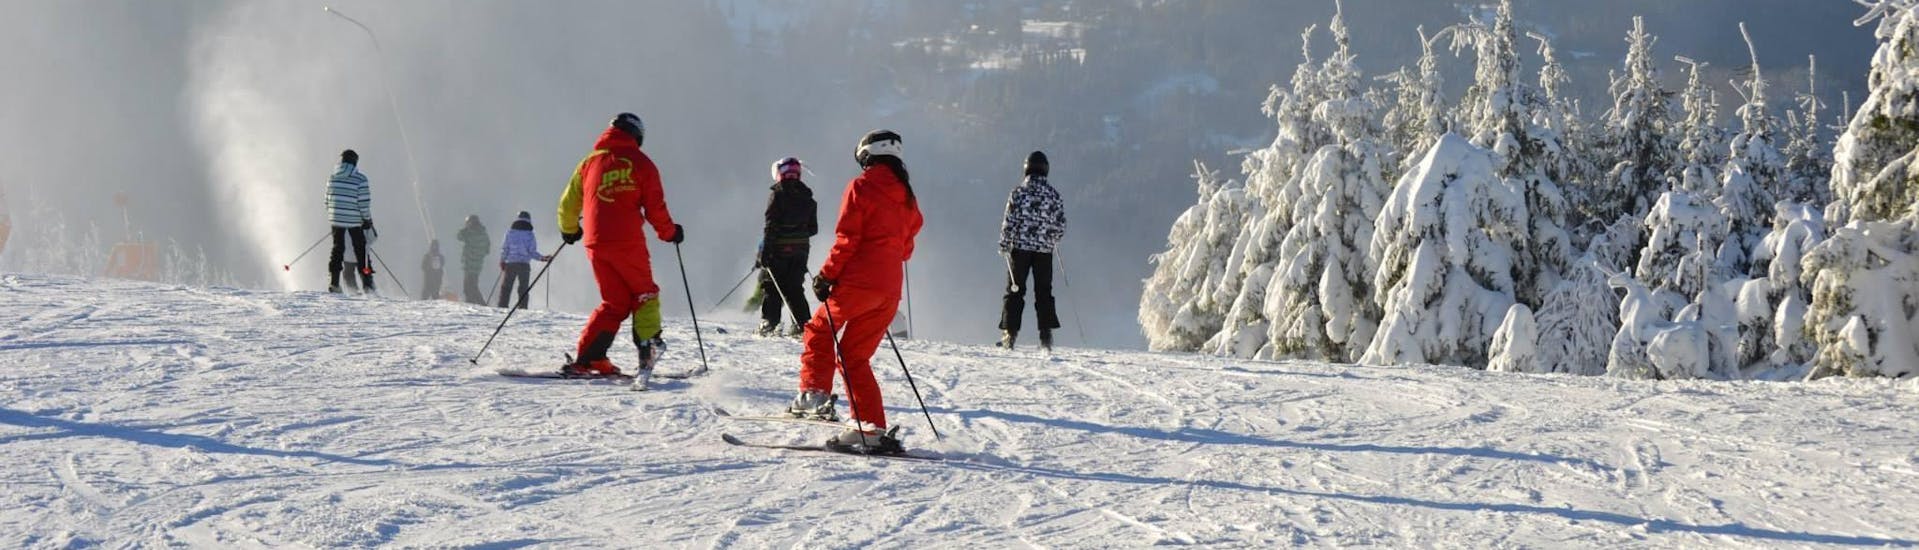 Clases de esquí para adultos a partir de 12 años para todos los niveles.